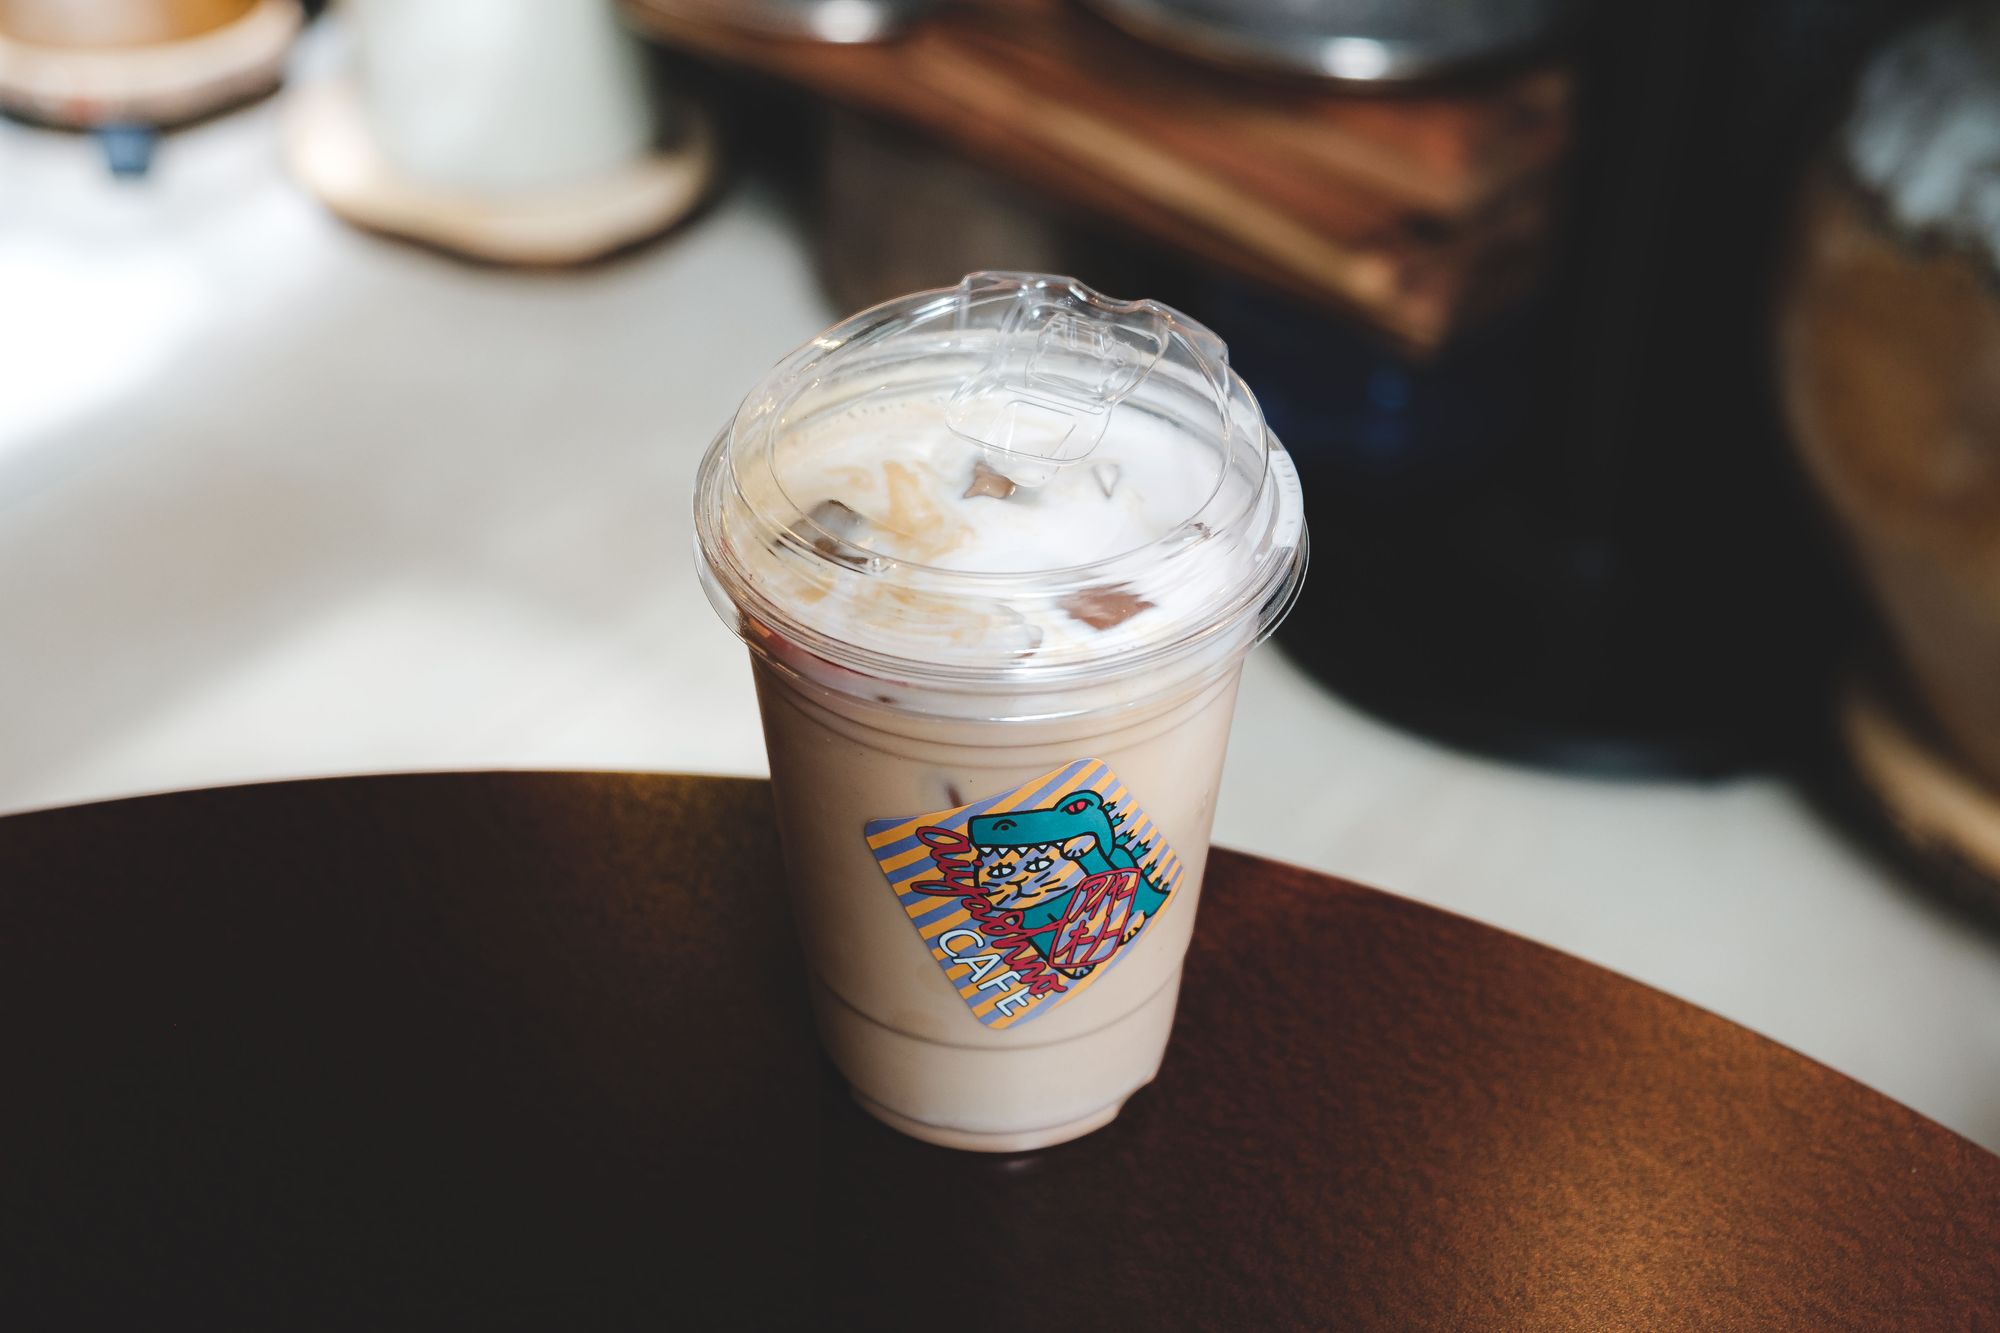 Aiyaohno Cafe – Iced Salted Sakura Latte